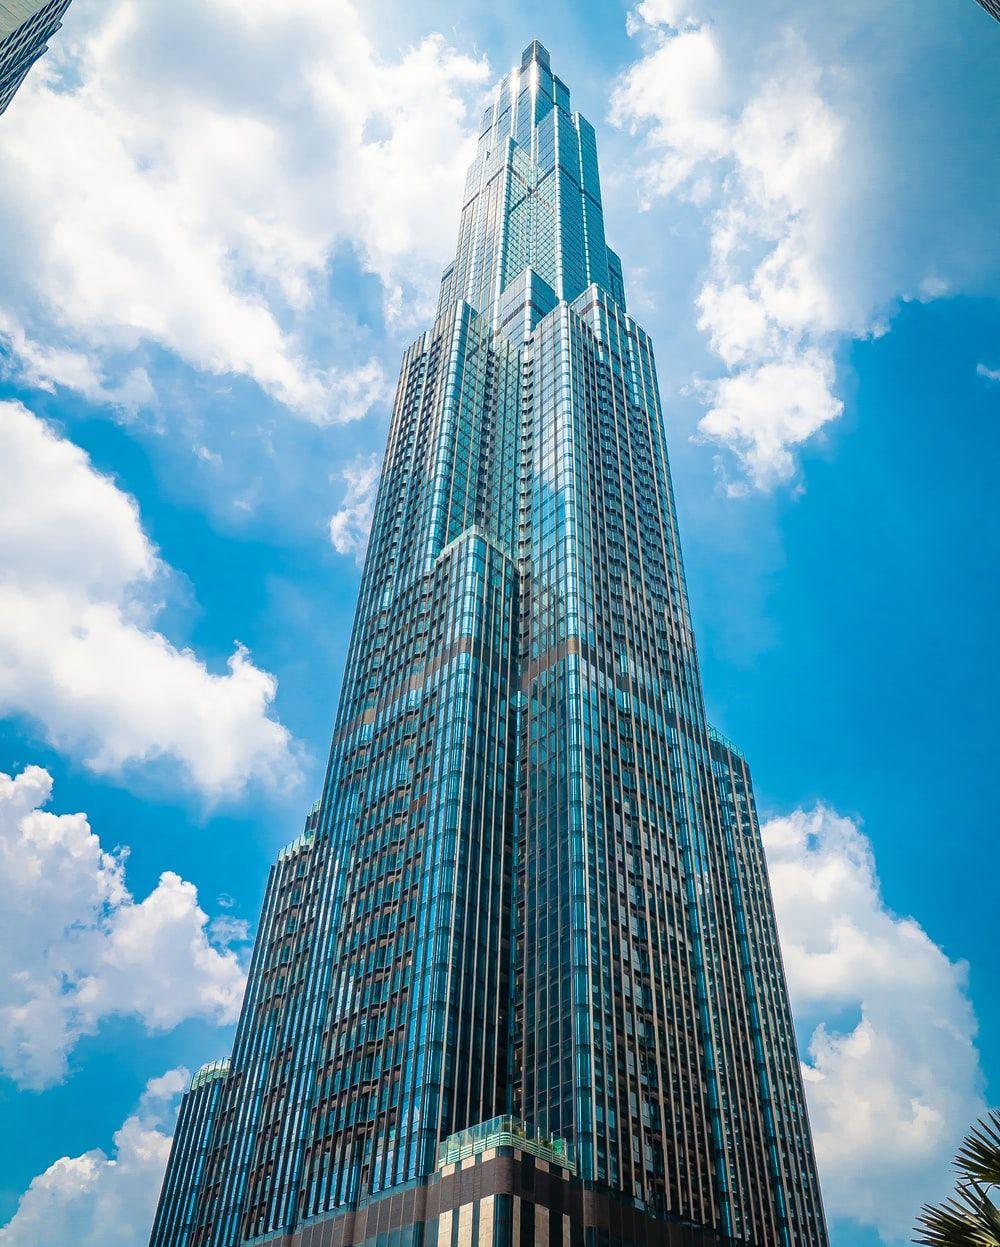 Bạn muốn nghía một chút về Landmark 81 mà không cần phải đến đó? Hãy xem các bức ảnh nền về tòa nhà cao nhất Việt Nam này. Với độ phân giải cao và các góc chụp độc đáo, các bức ảnh nền này sẽ cho bạn cái nhìn tuyệt đẹp về Landmark